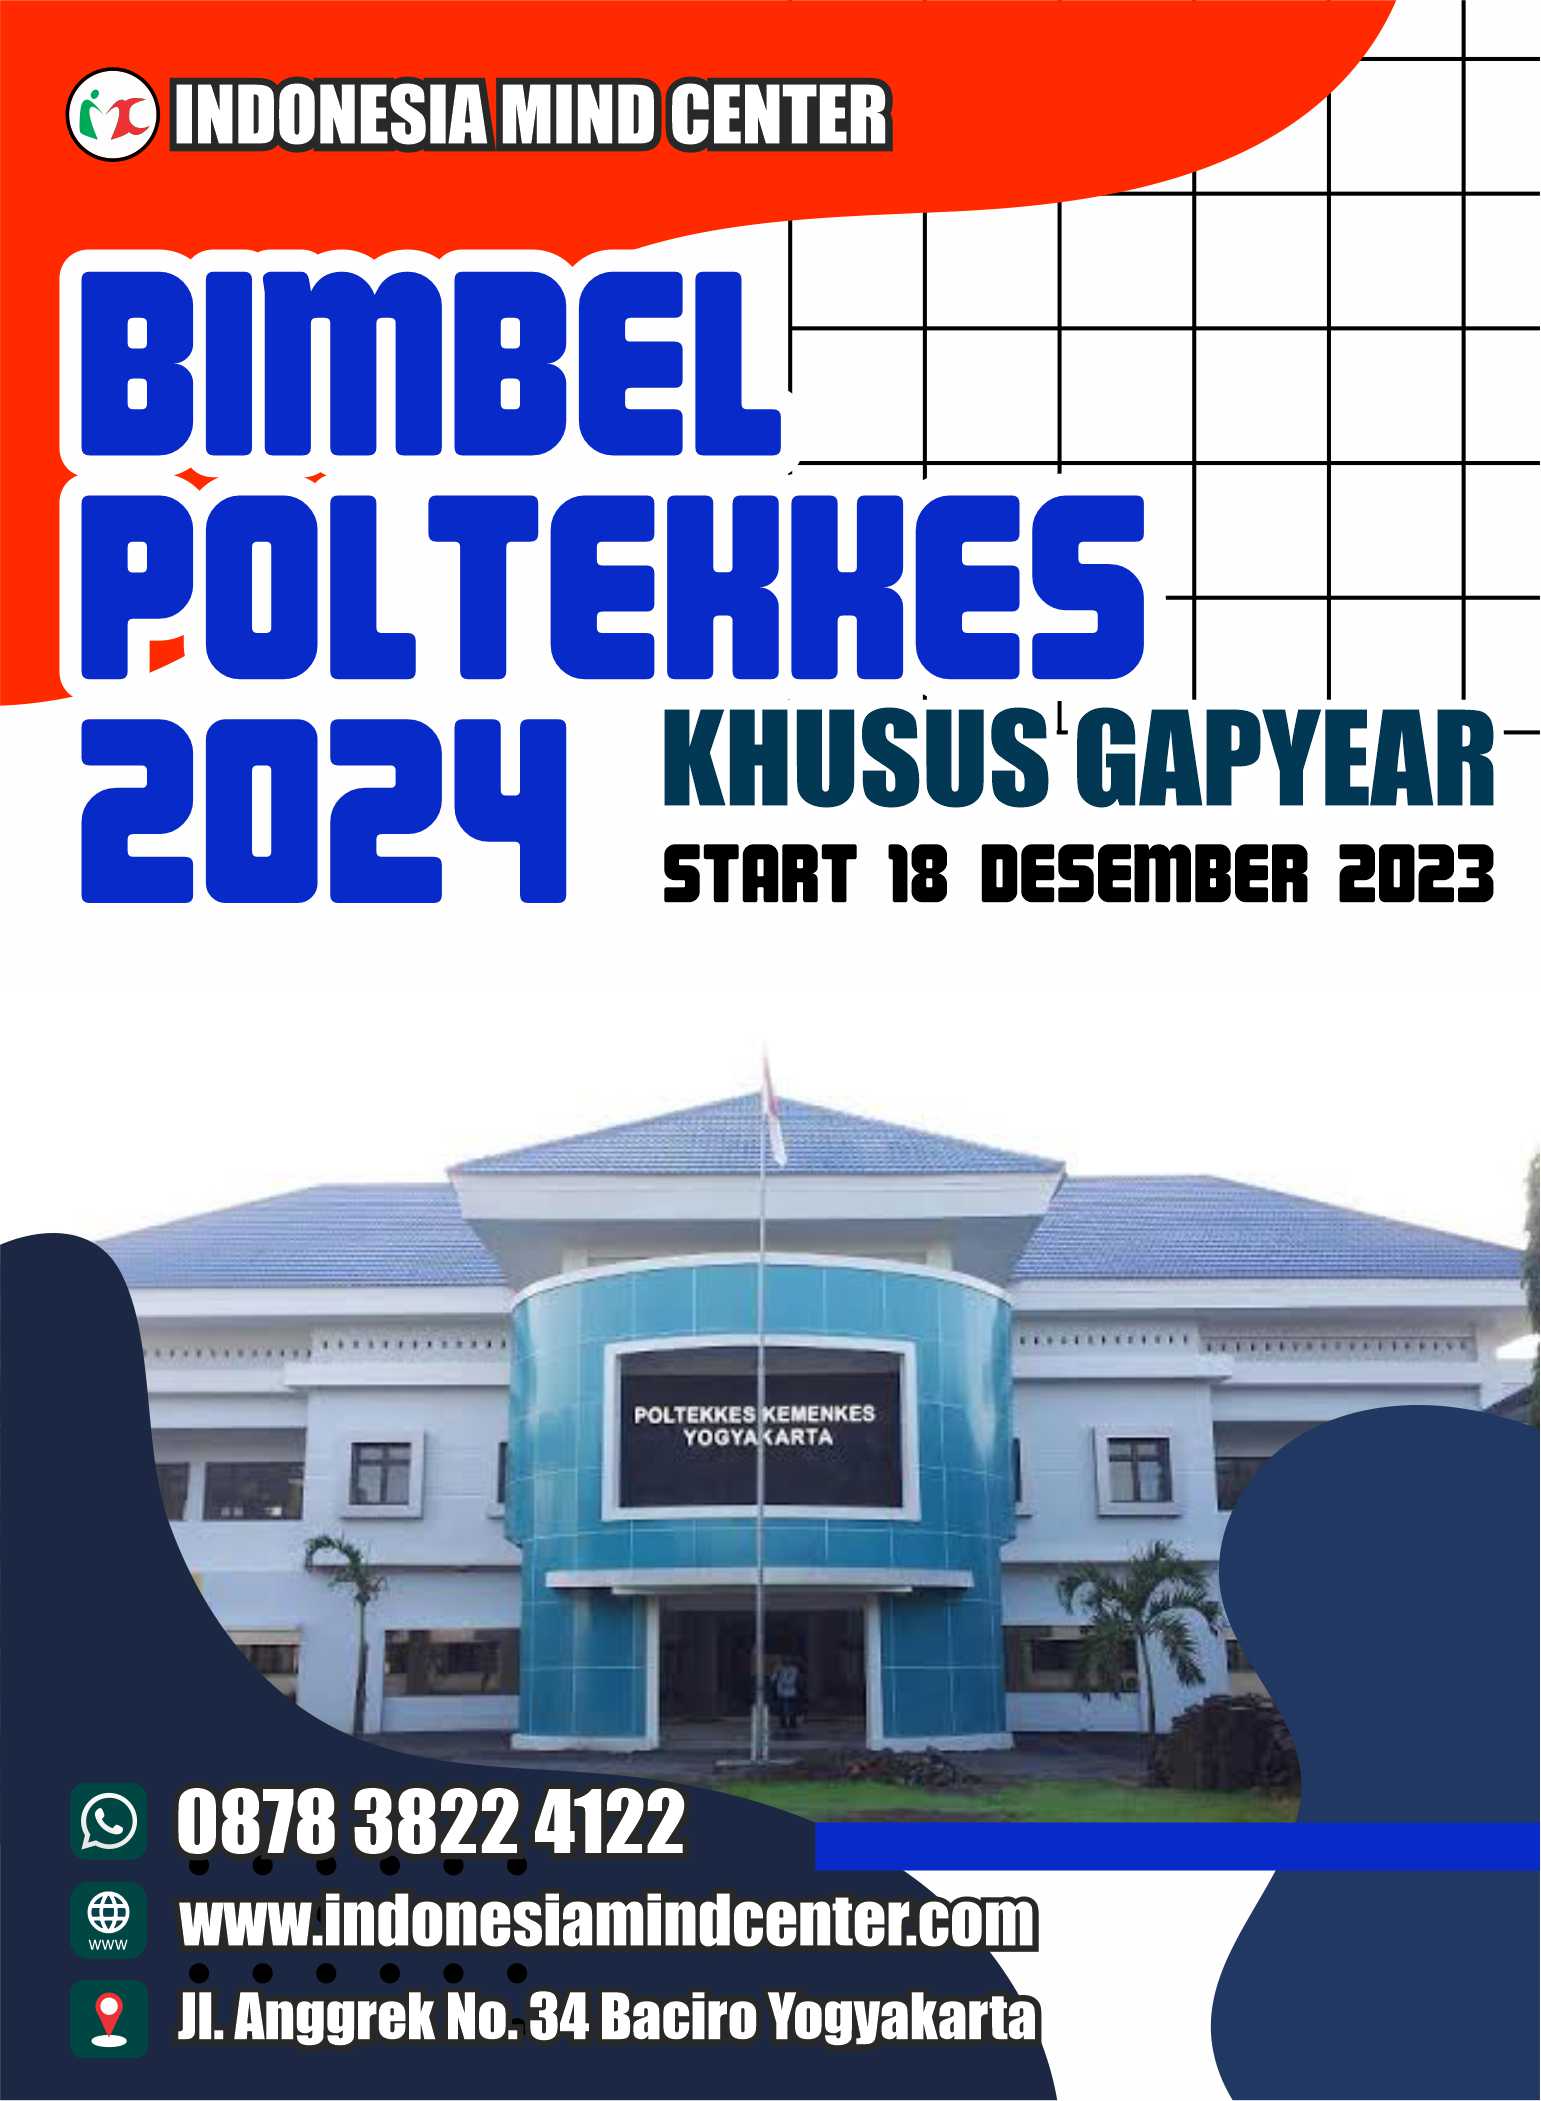 BIMBEL POLTEKKES 2024 KHUSUS GAPYEAR START 18 DESEMBER 2023